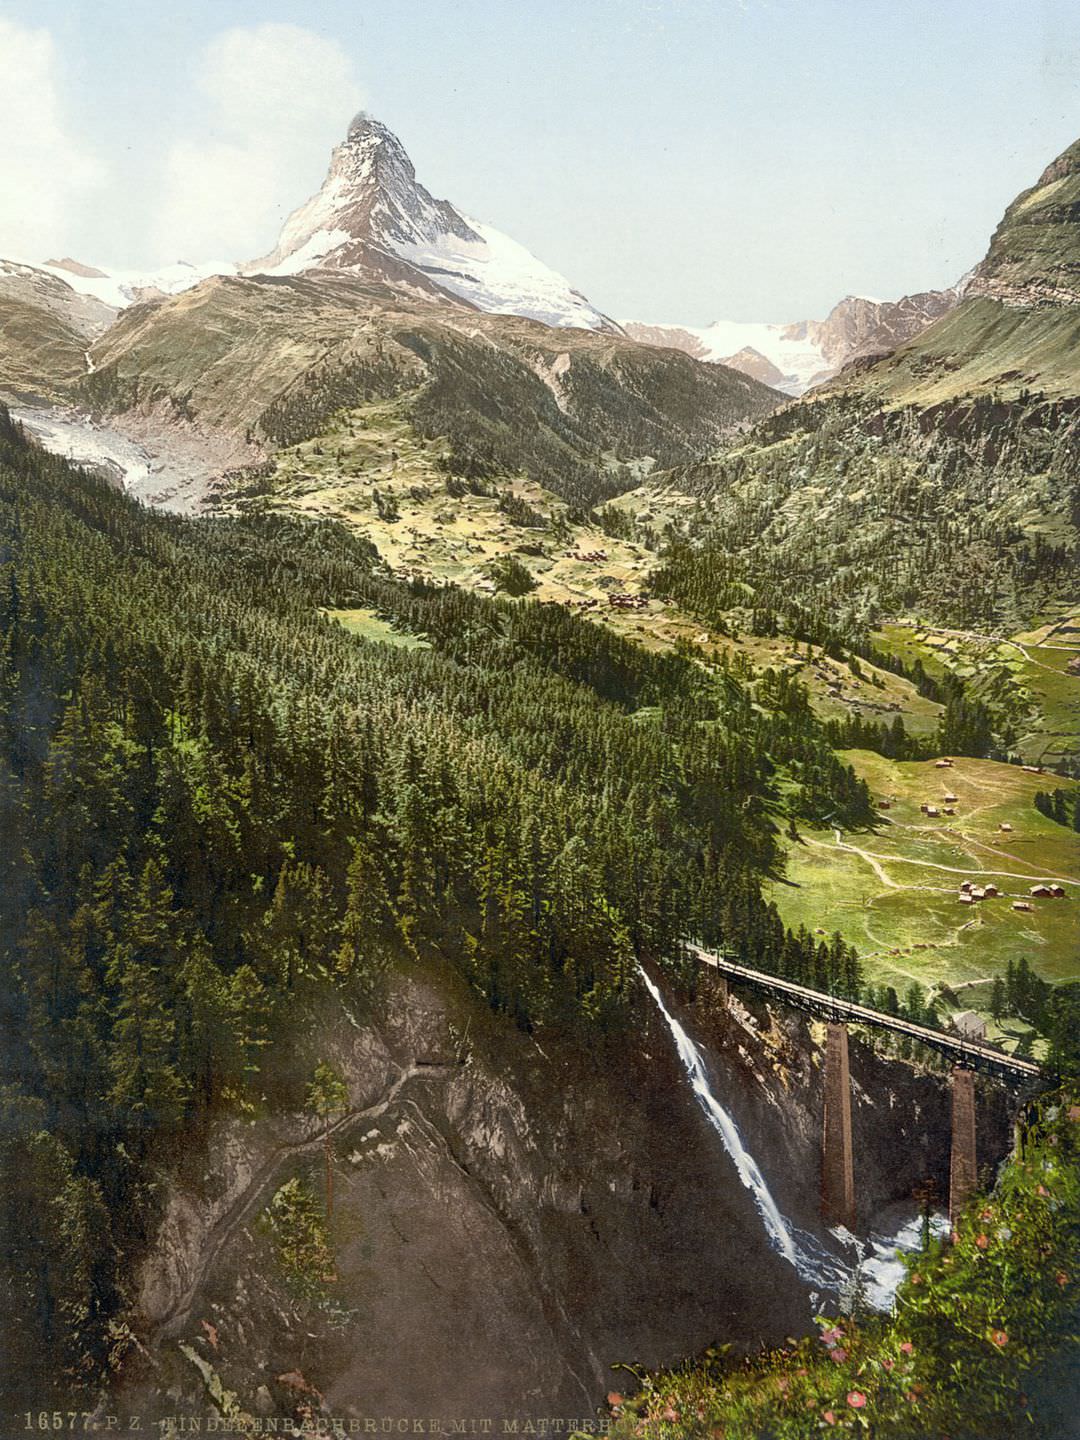 The Matterhorn and the Findelenbach Bridge, Valais.